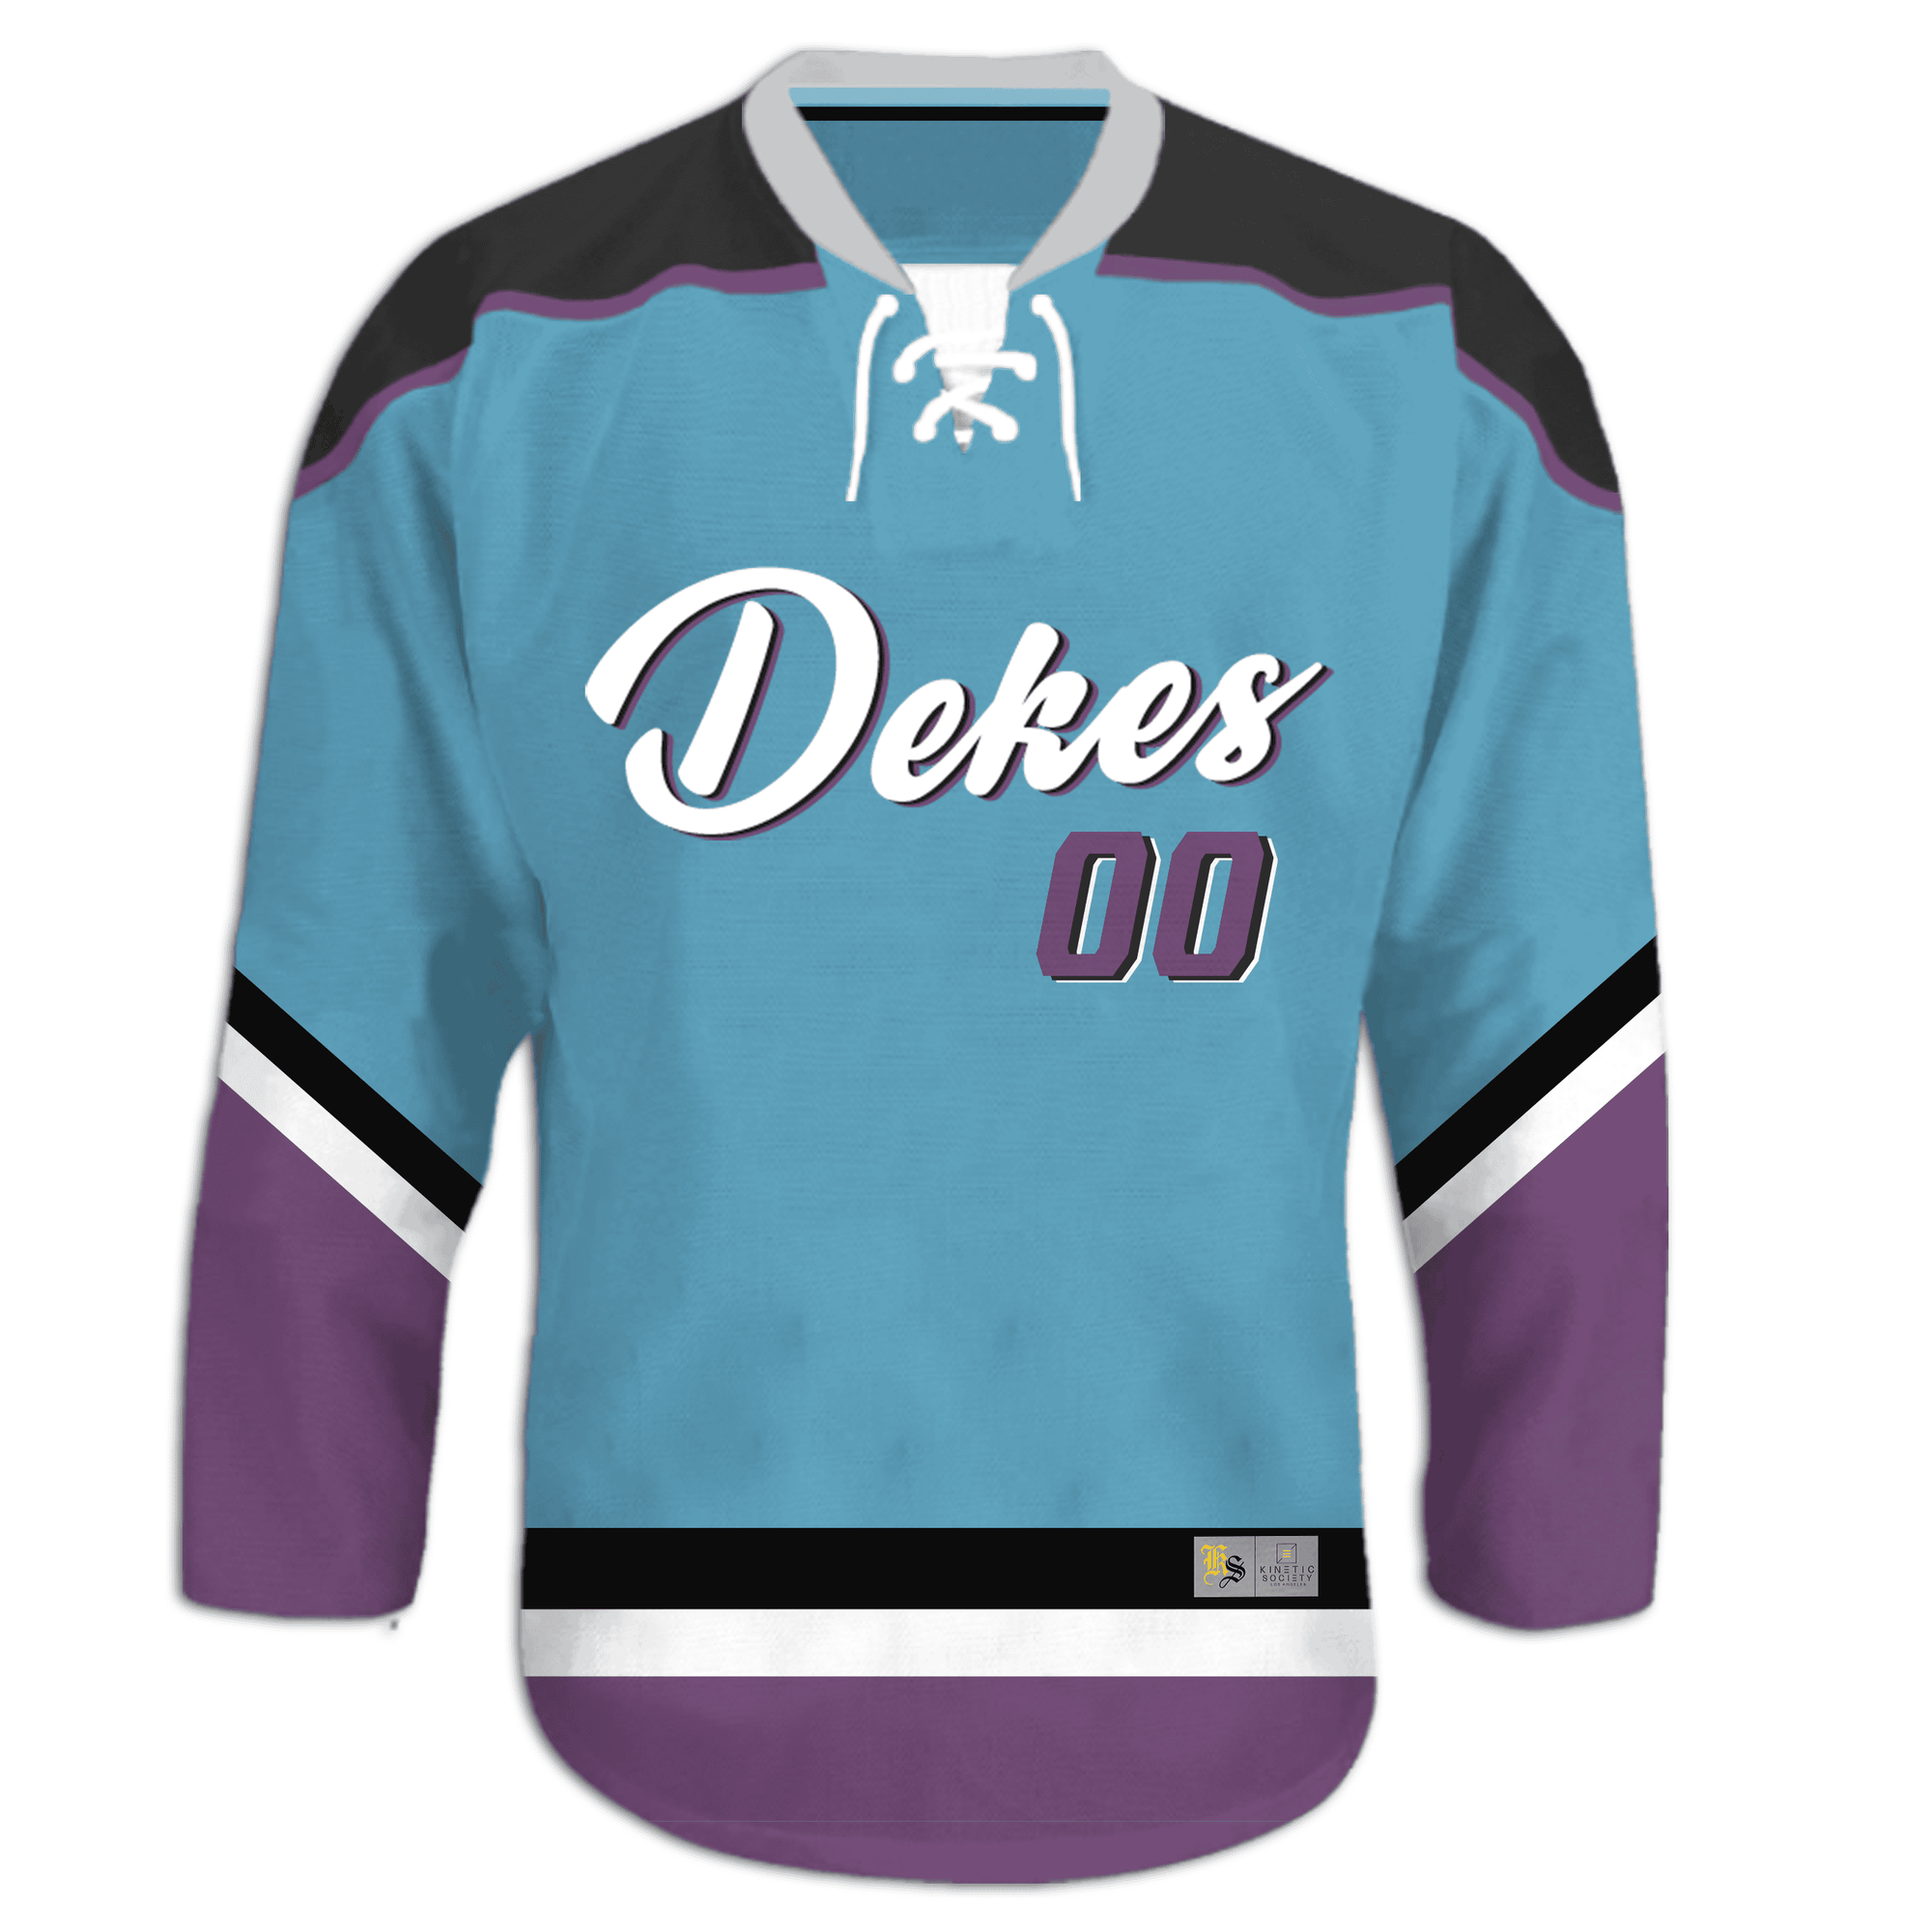 Delta Kappa Epsilon - Kratos Hockey Jersey